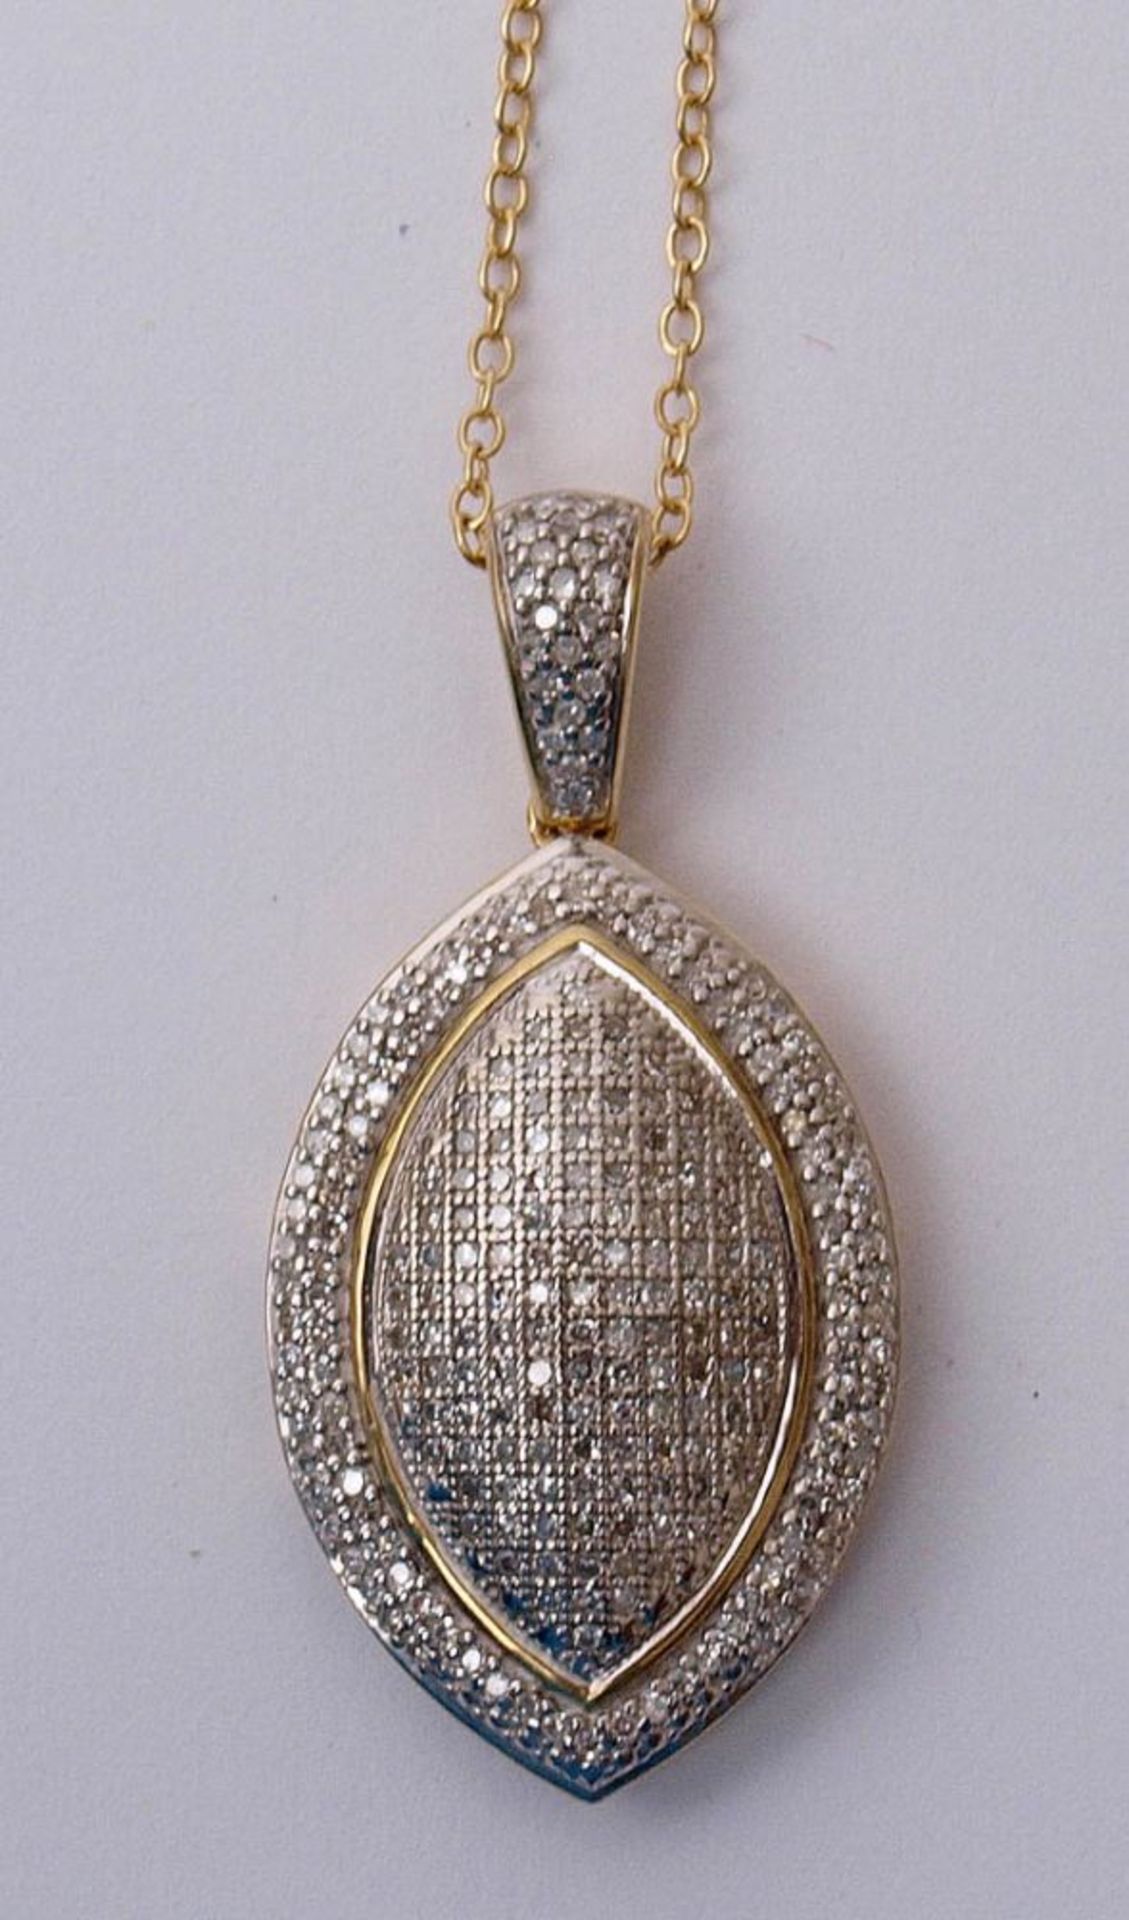 Anhänger Silber 925, vergoldet. Spitzovale Form, besetzt mit zahlreichen synthetischen Diamanten.